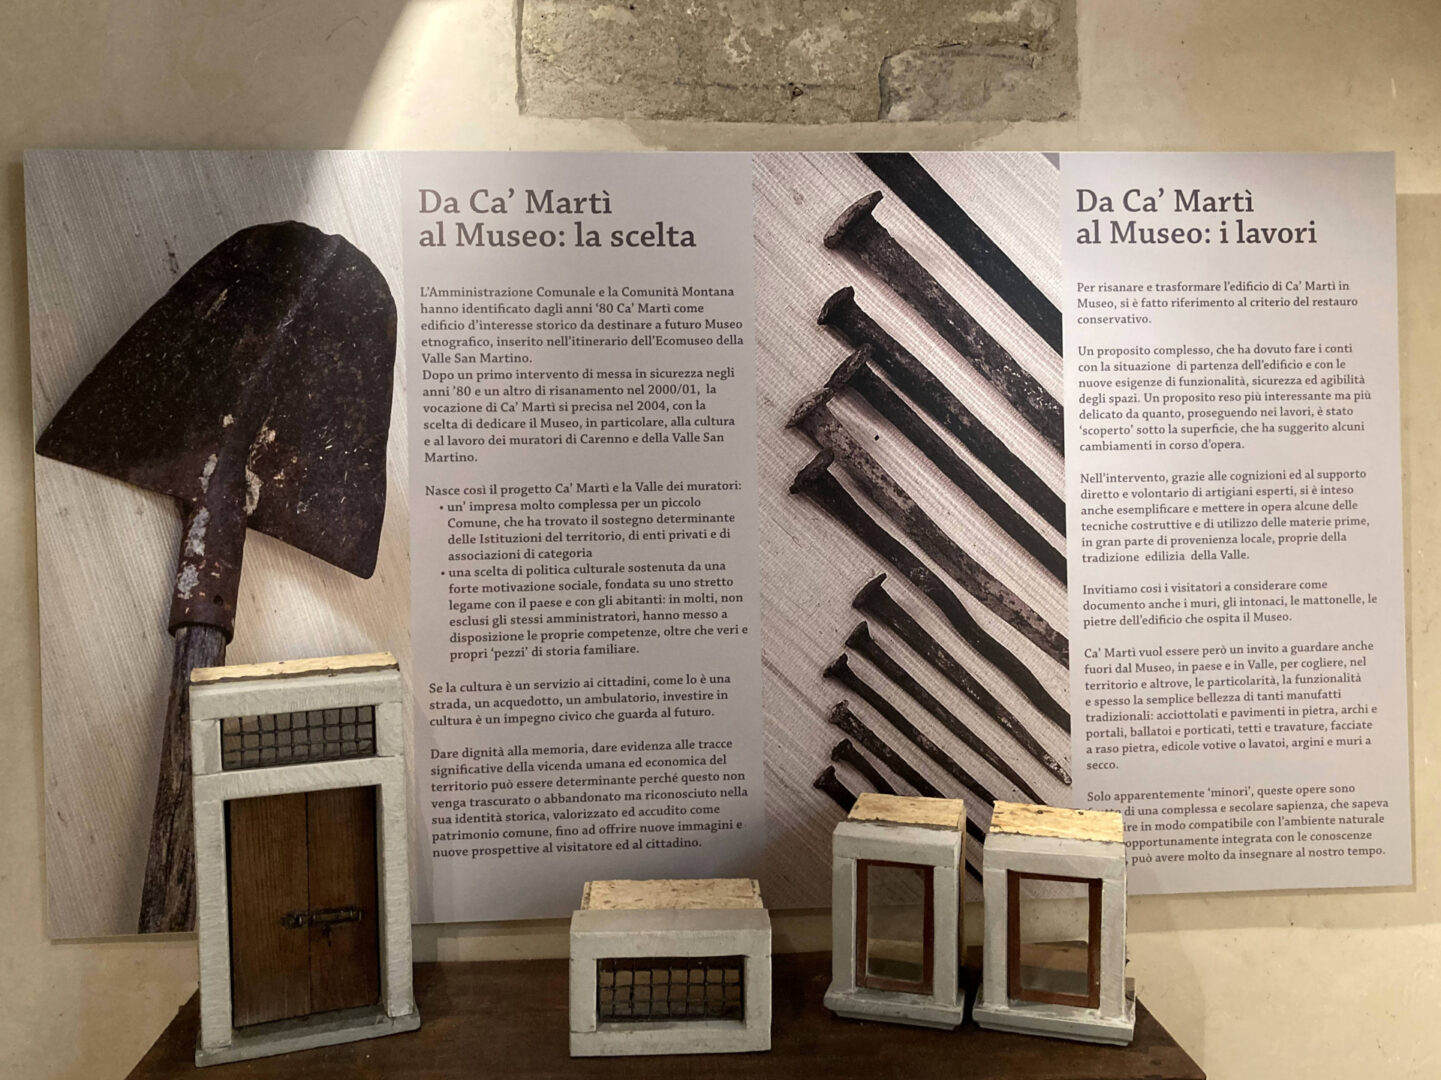 Interno del Museo Ca' Martì, sezione dedicata alla genesi del progetto.